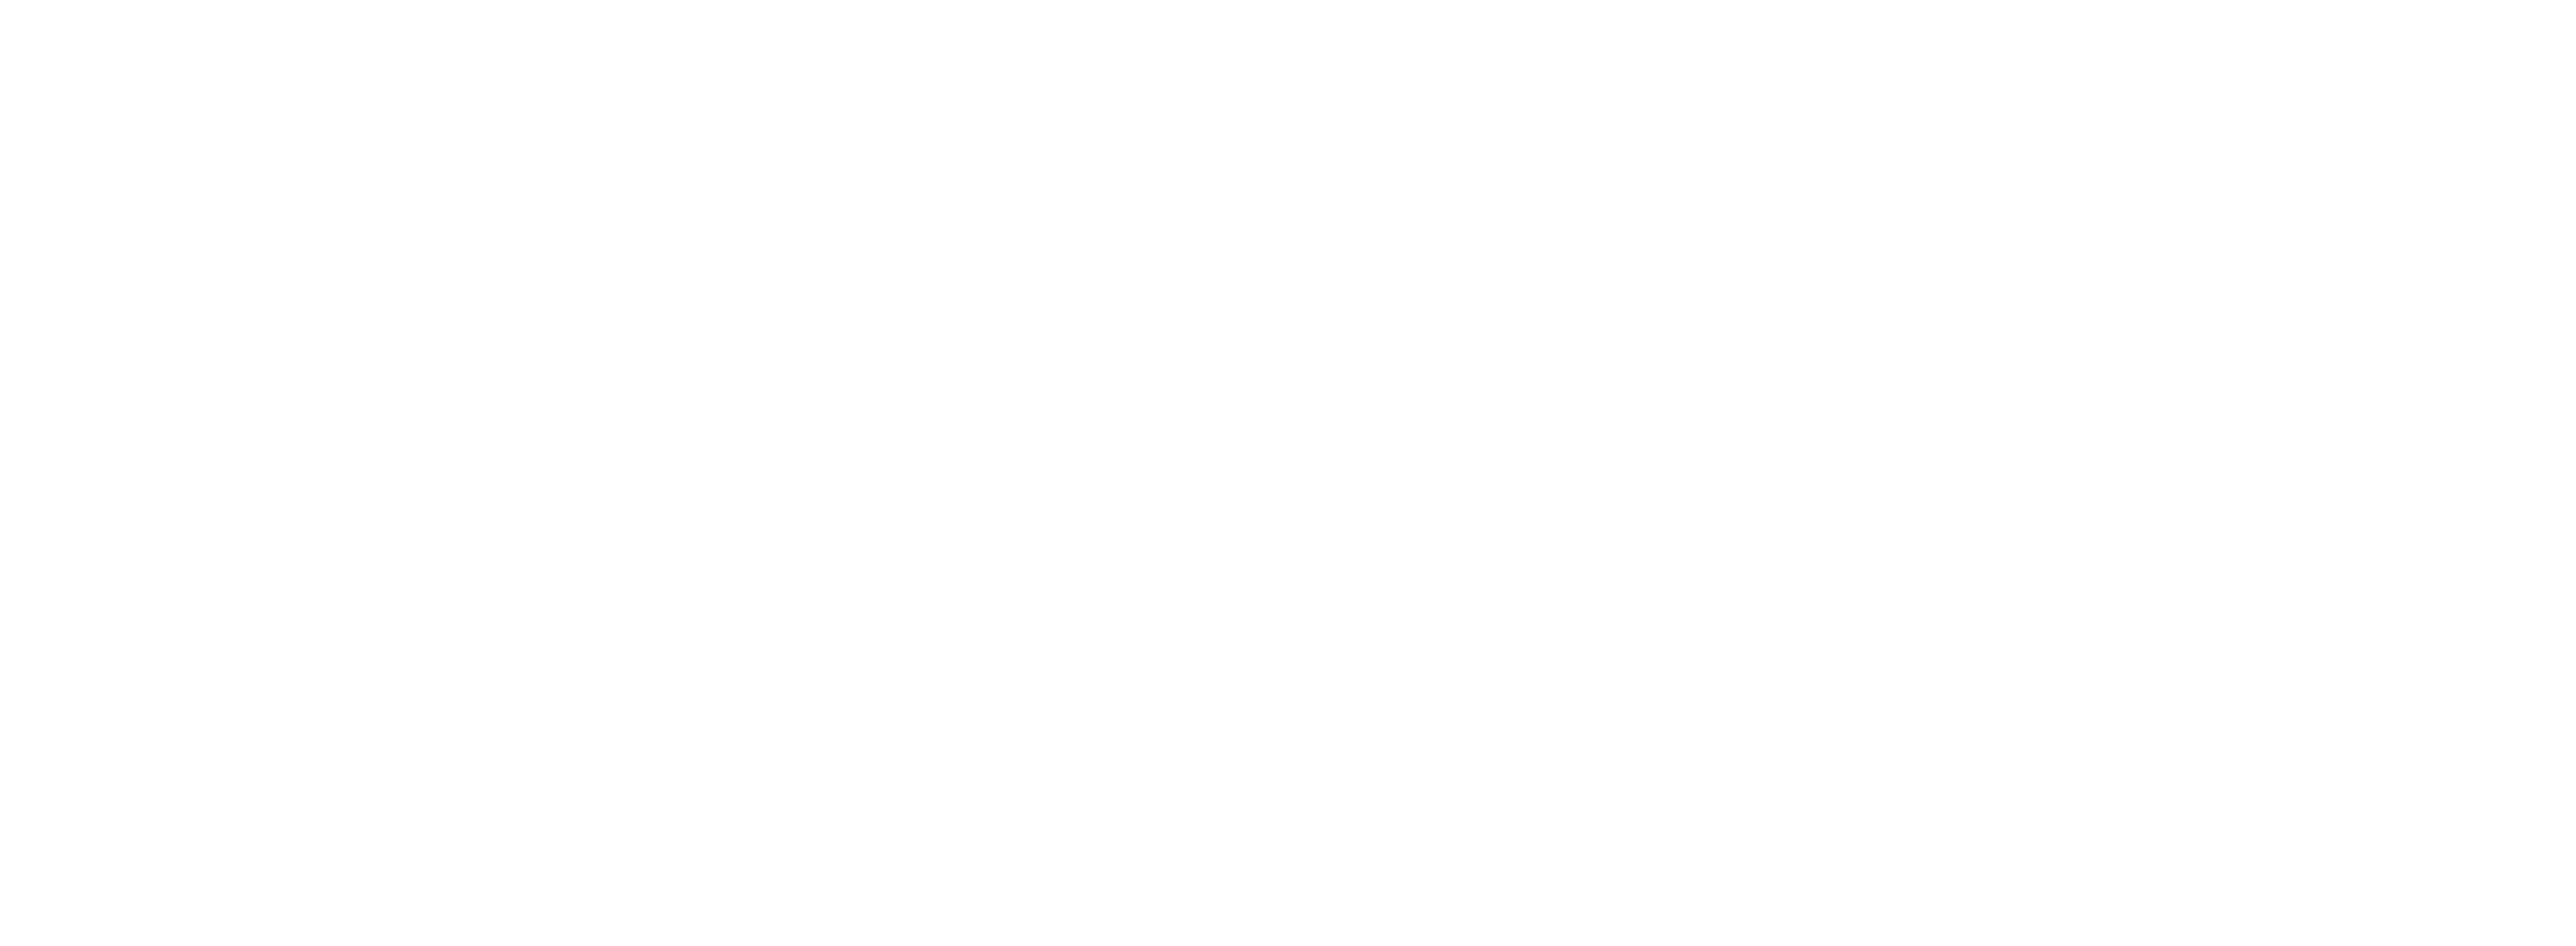 The Vanity Chest